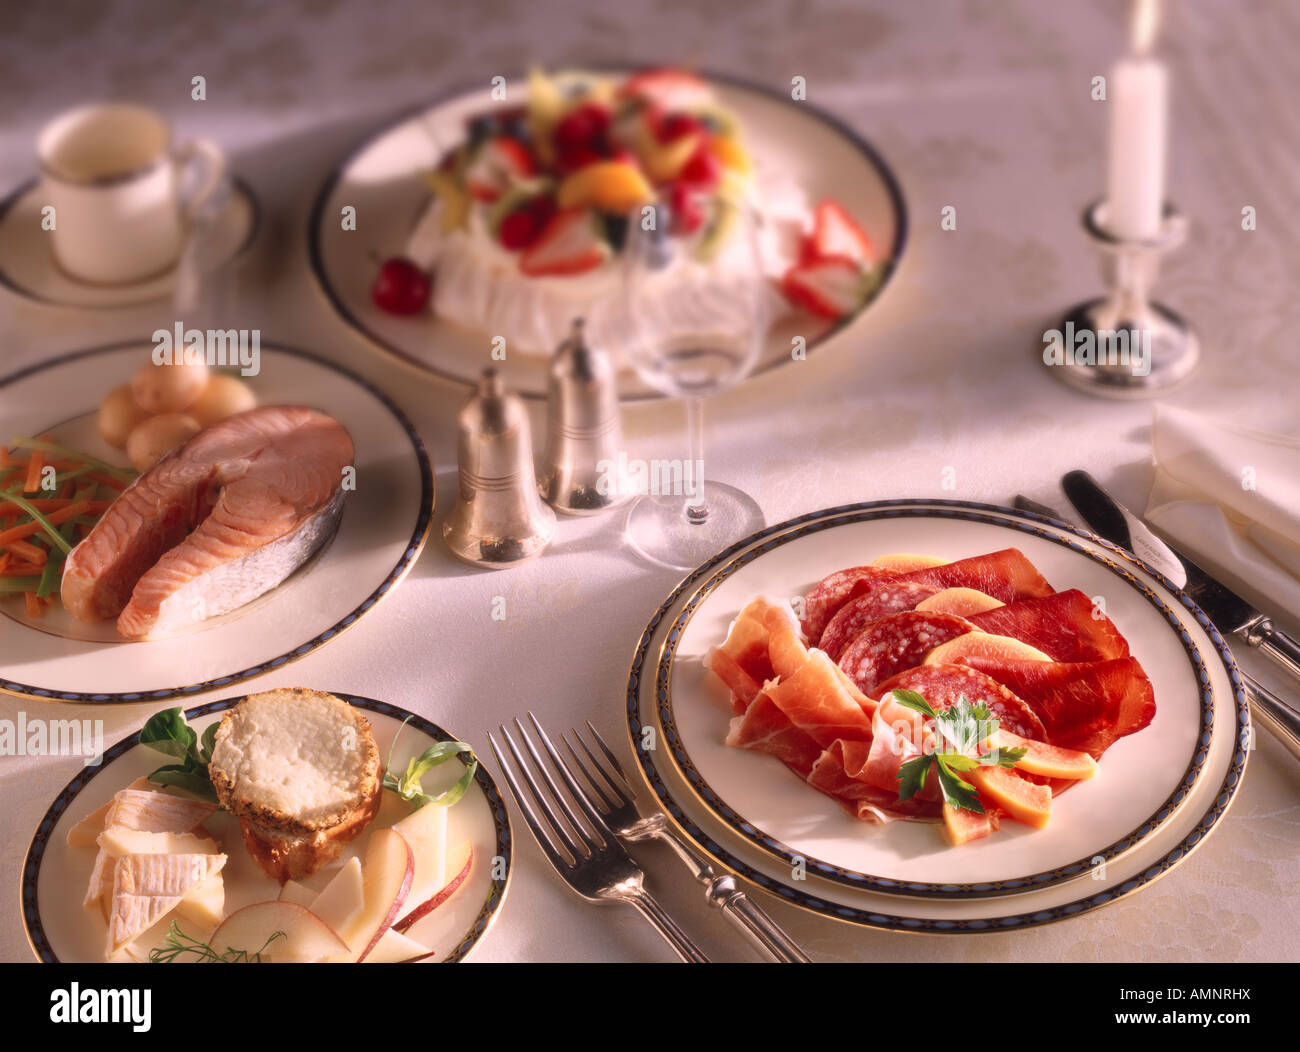 Un pasto completo di starter Charcutterie, corso principale, bistecca di salmone, Dessert Pavlova. Una cena o un pranzo impostazione su un tavolo. Foto Stock